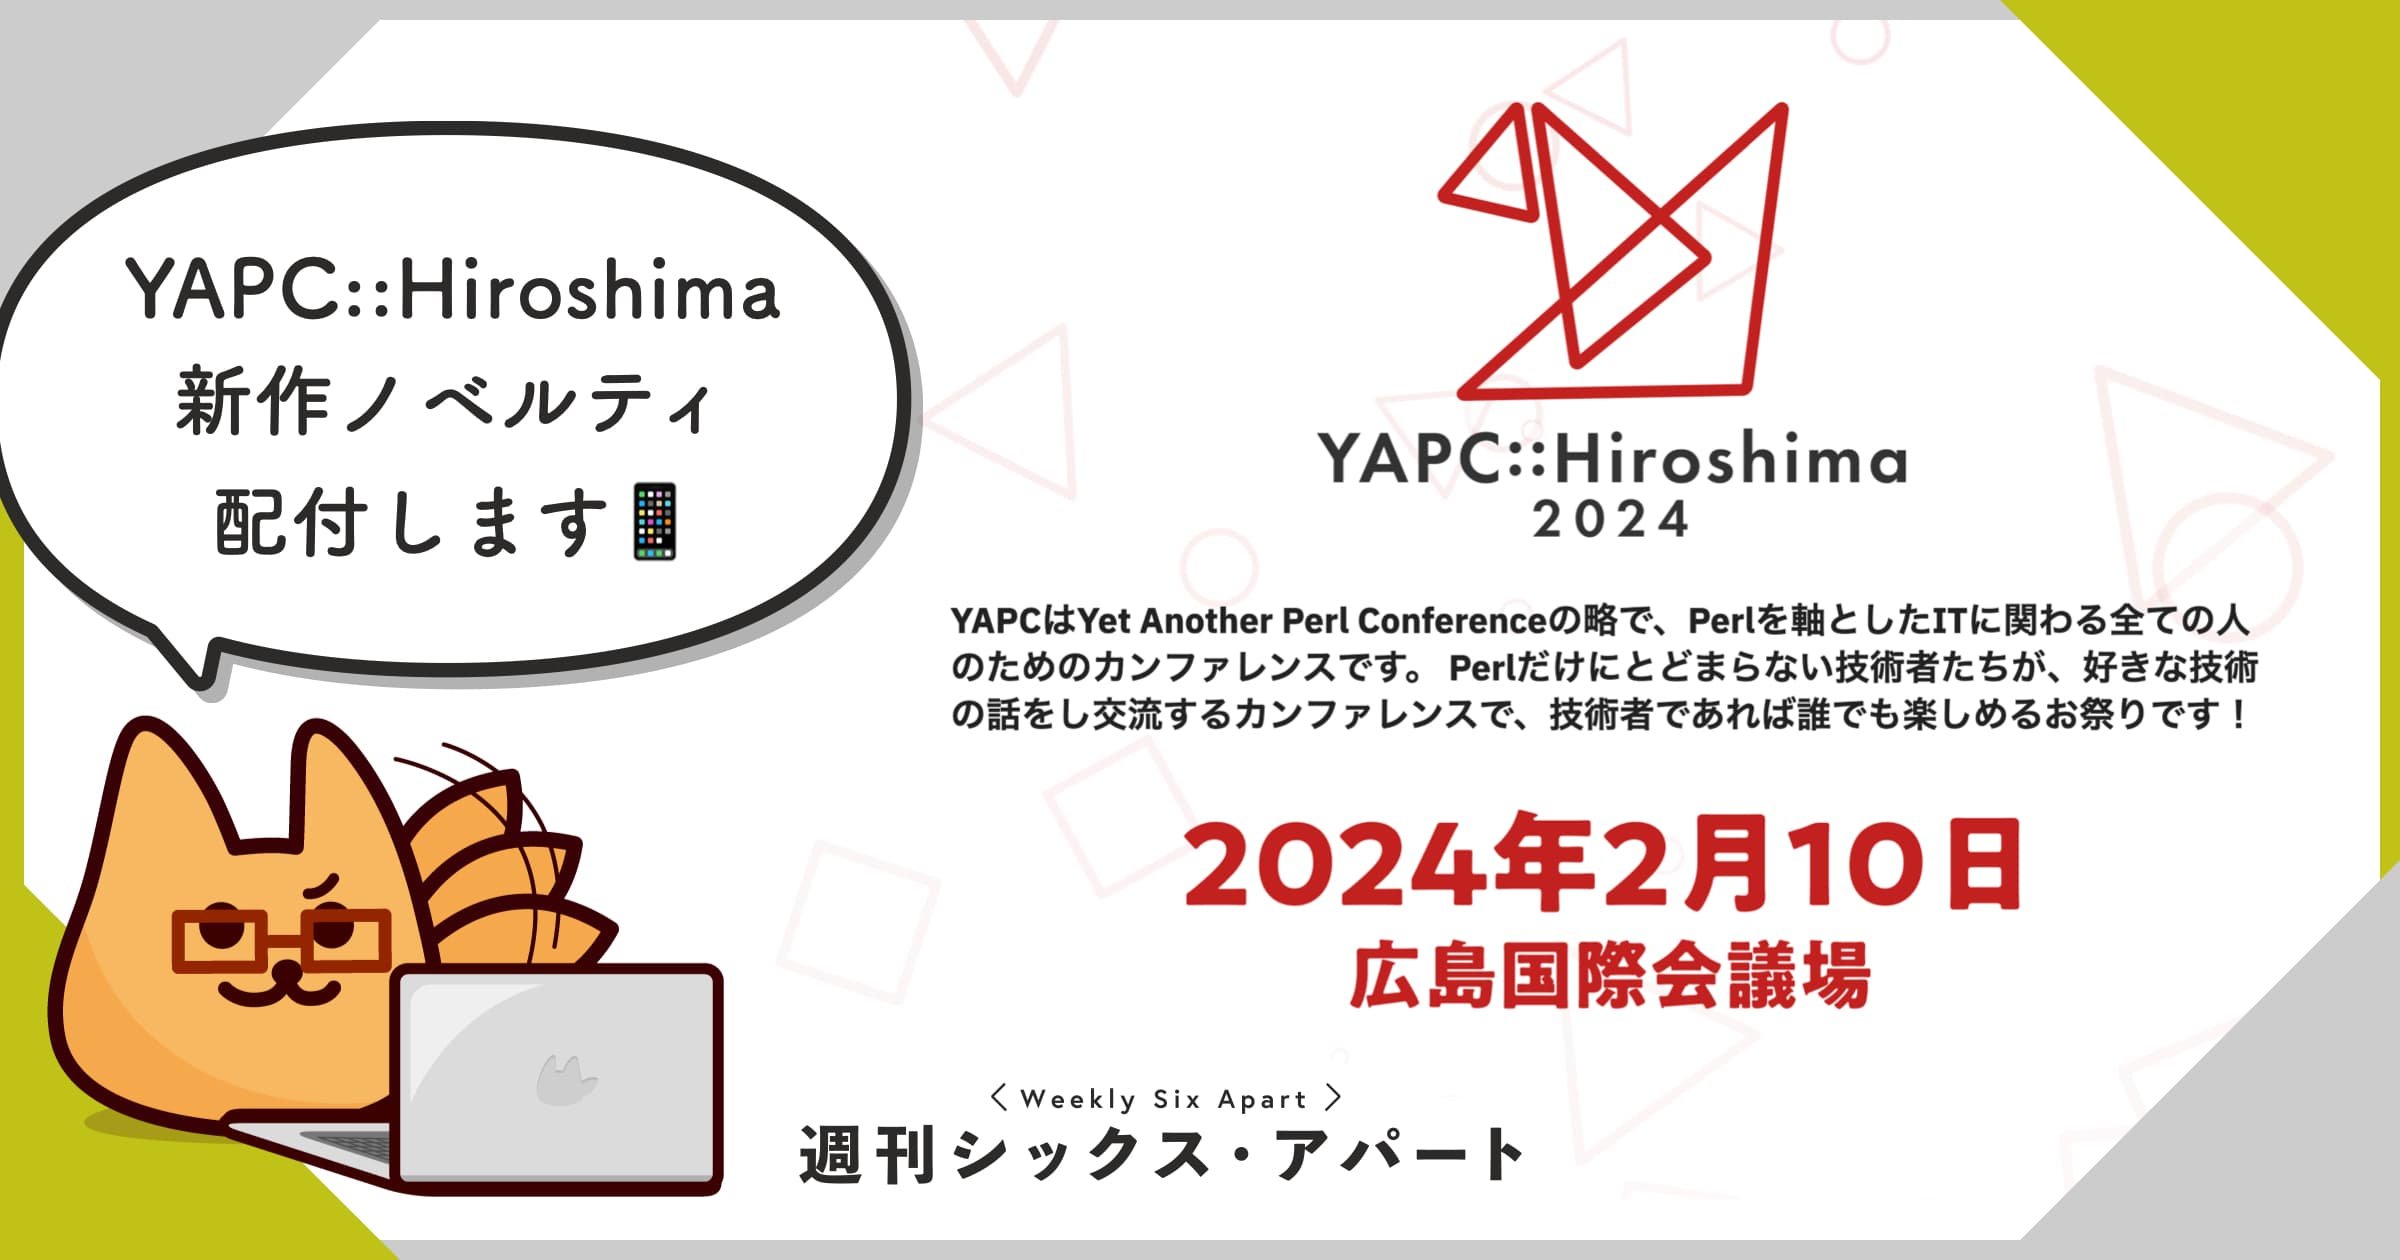 今年も YAPC::Hiroshima 2024 にスポンサードしています #週刊SA